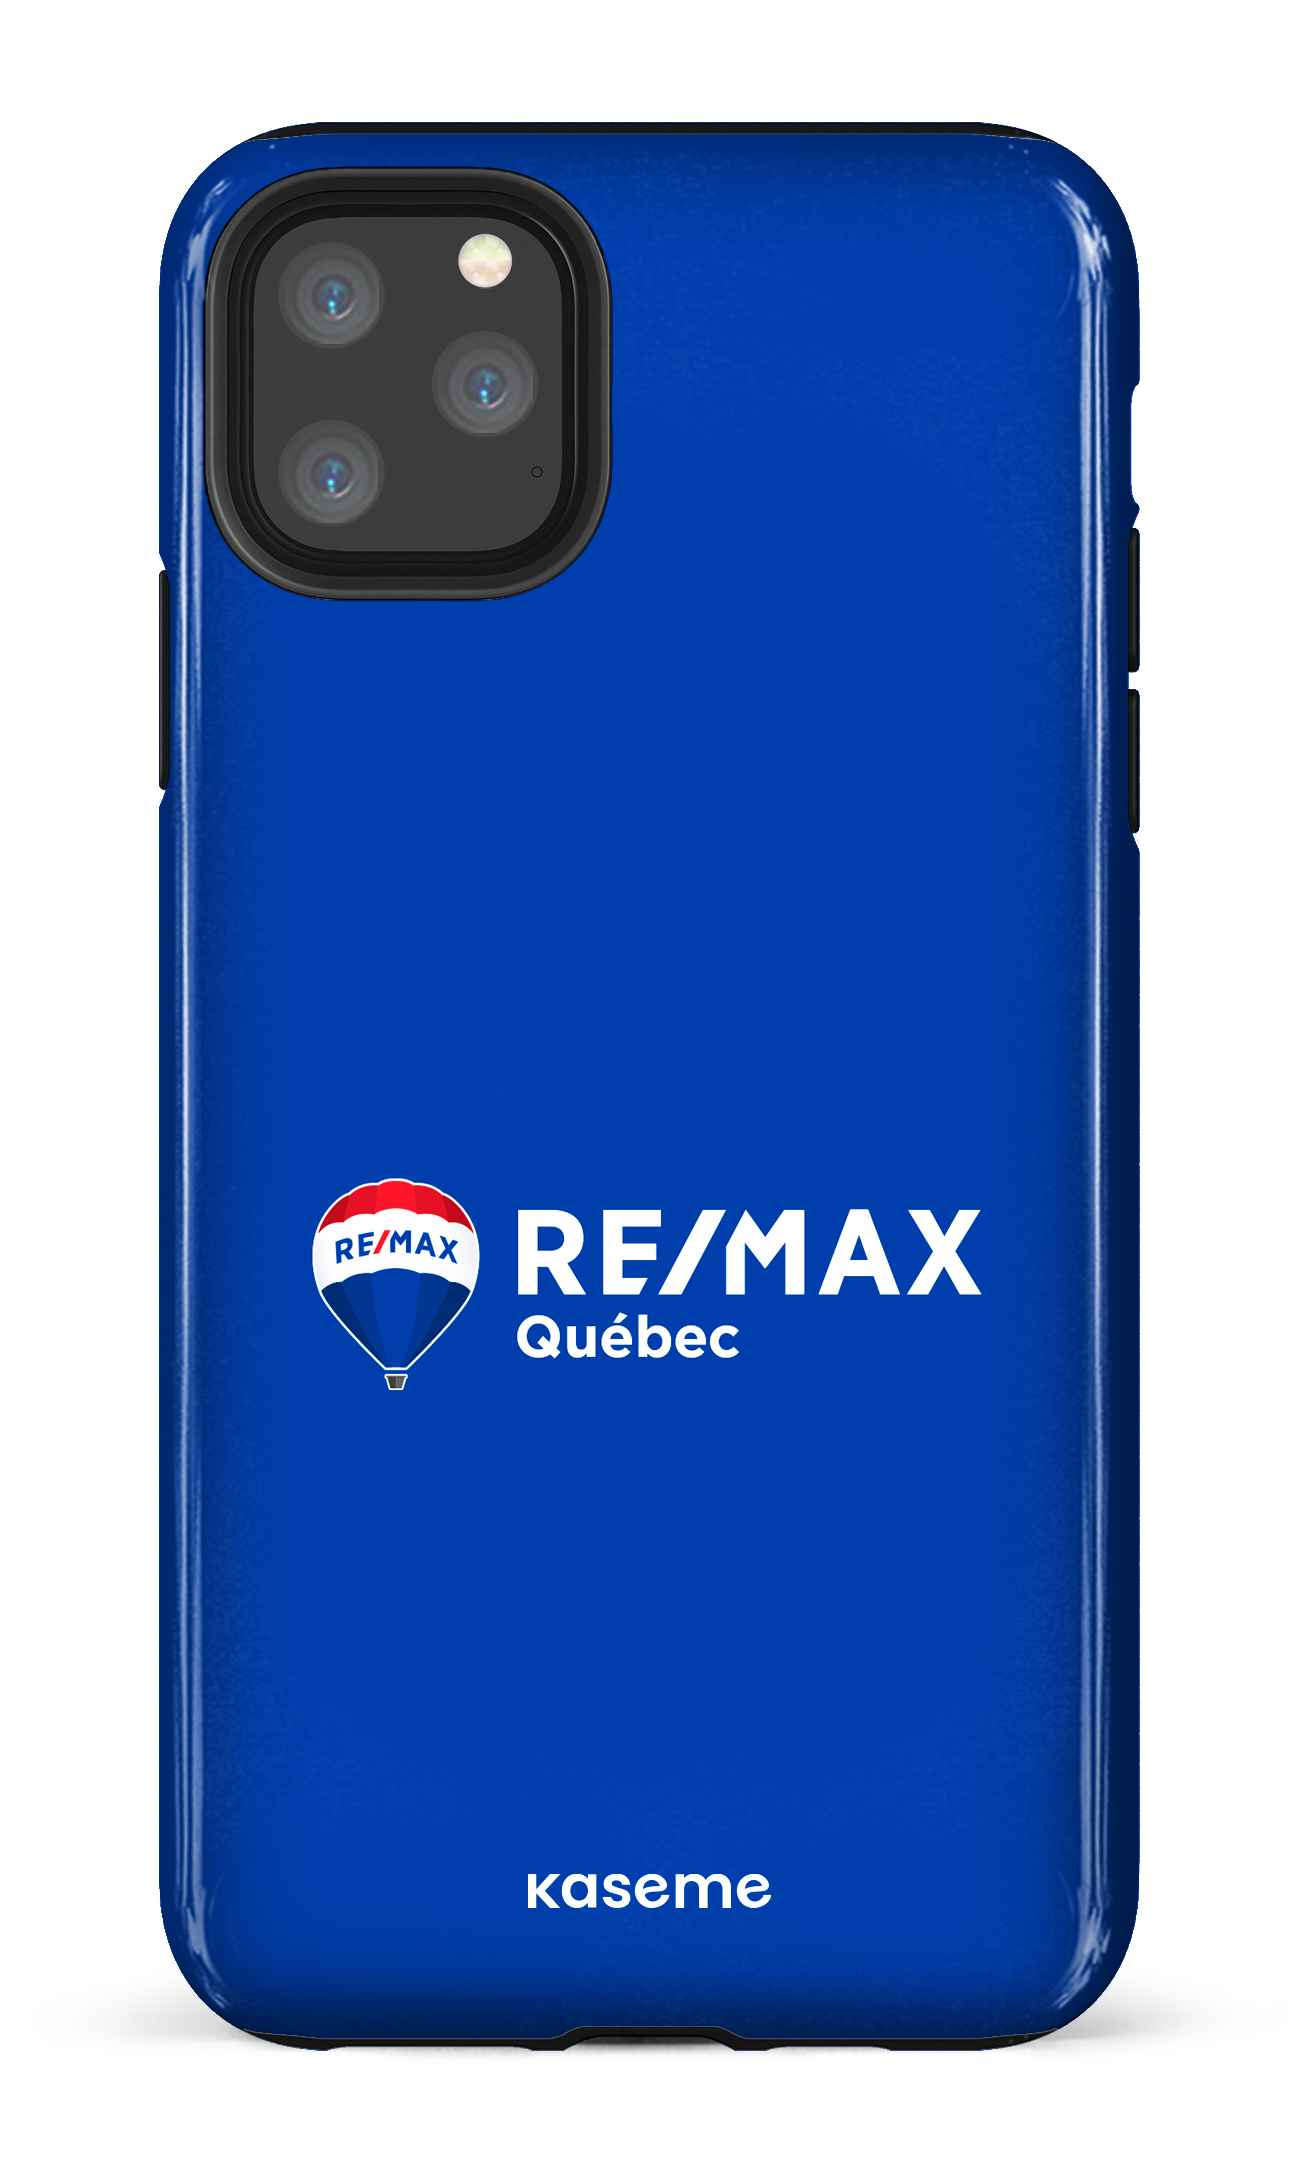 Remax Québec Bleu - iPhone 11 Pro Max